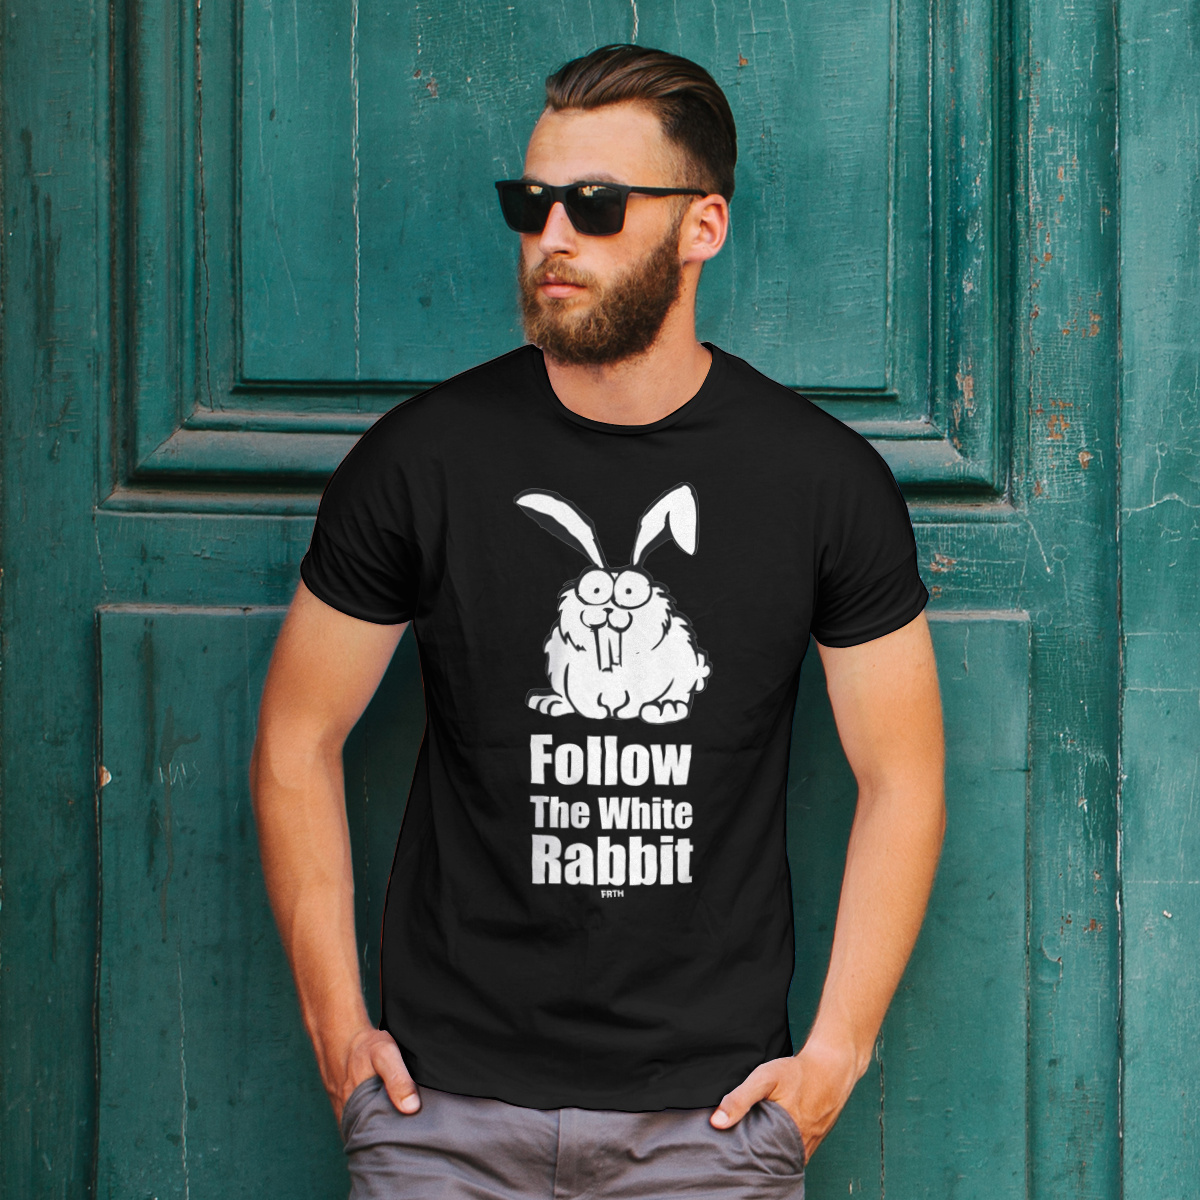 Follow The White Rabbit - Męska Koszulka Czarna